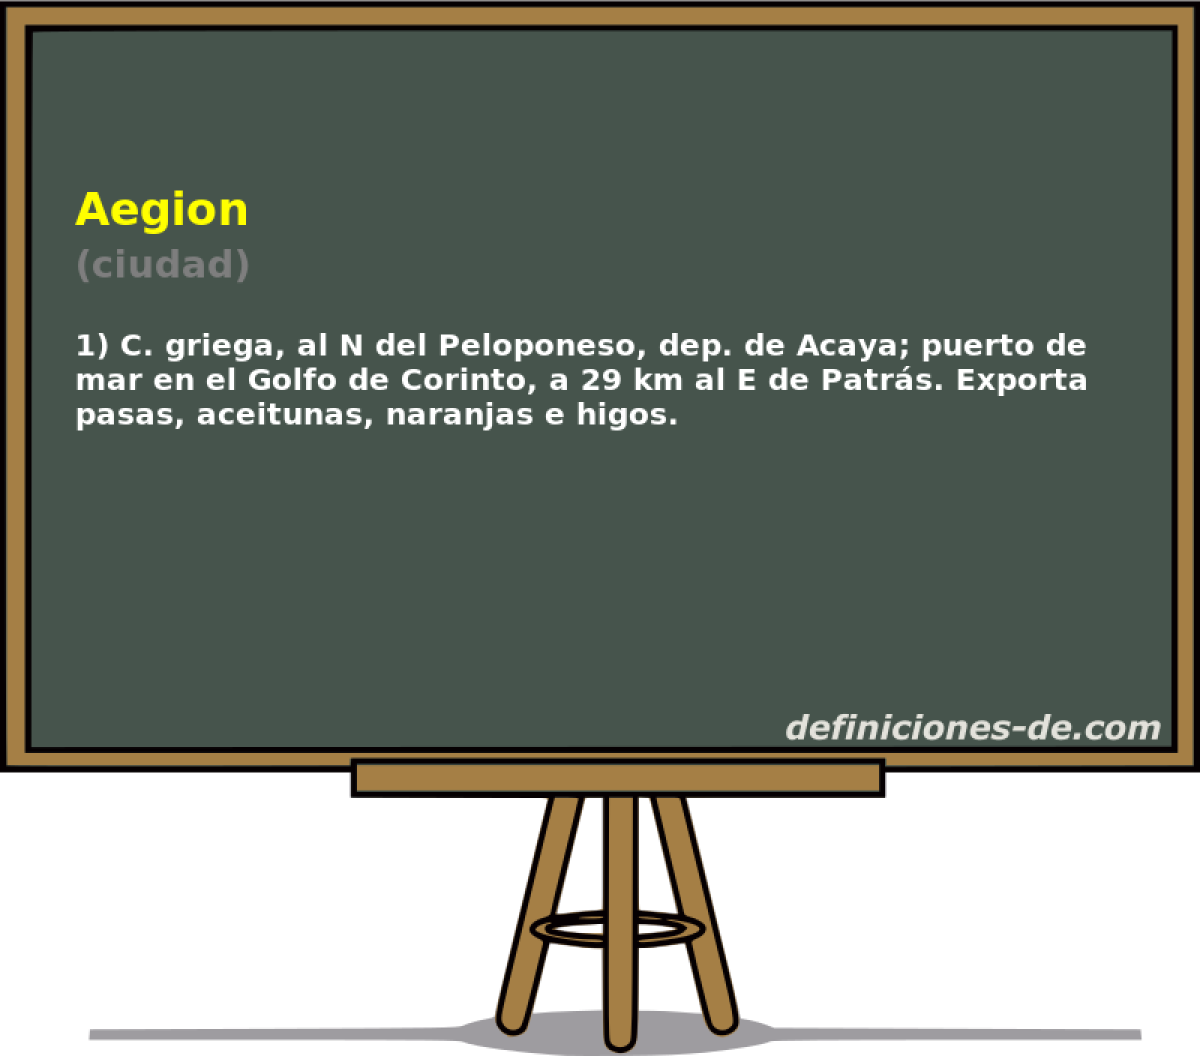 Aegion (ciudad)